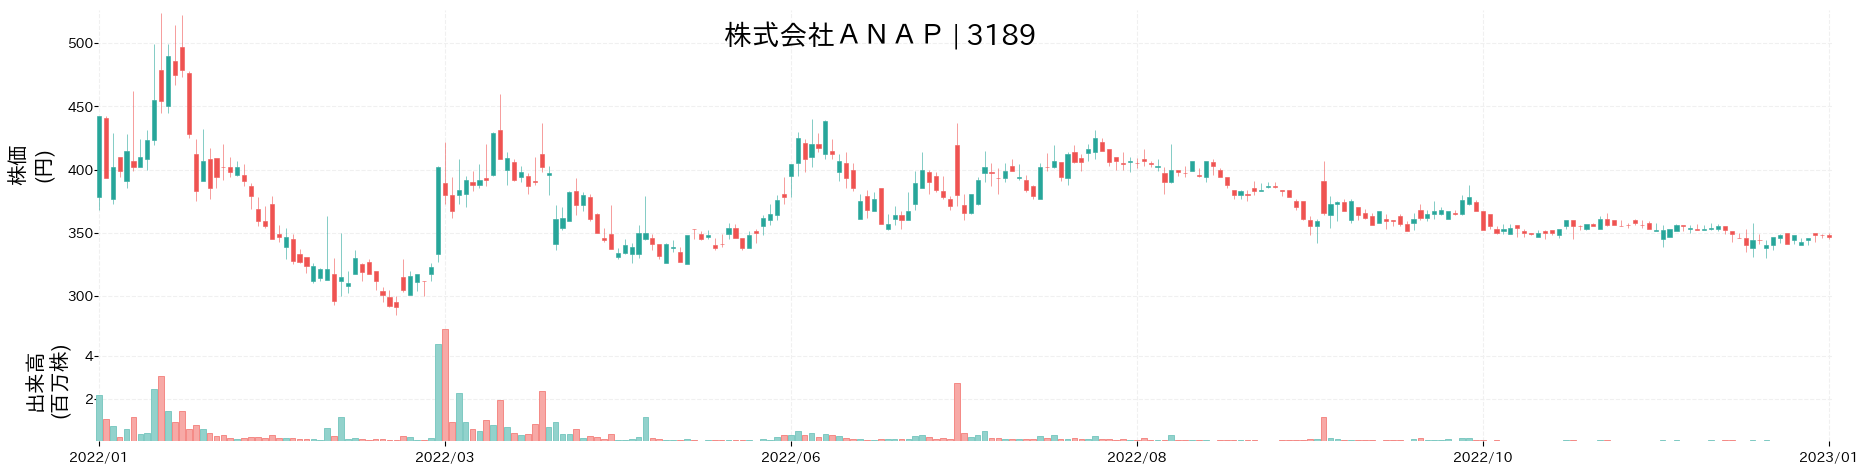 ANAPの株価推移(2022)